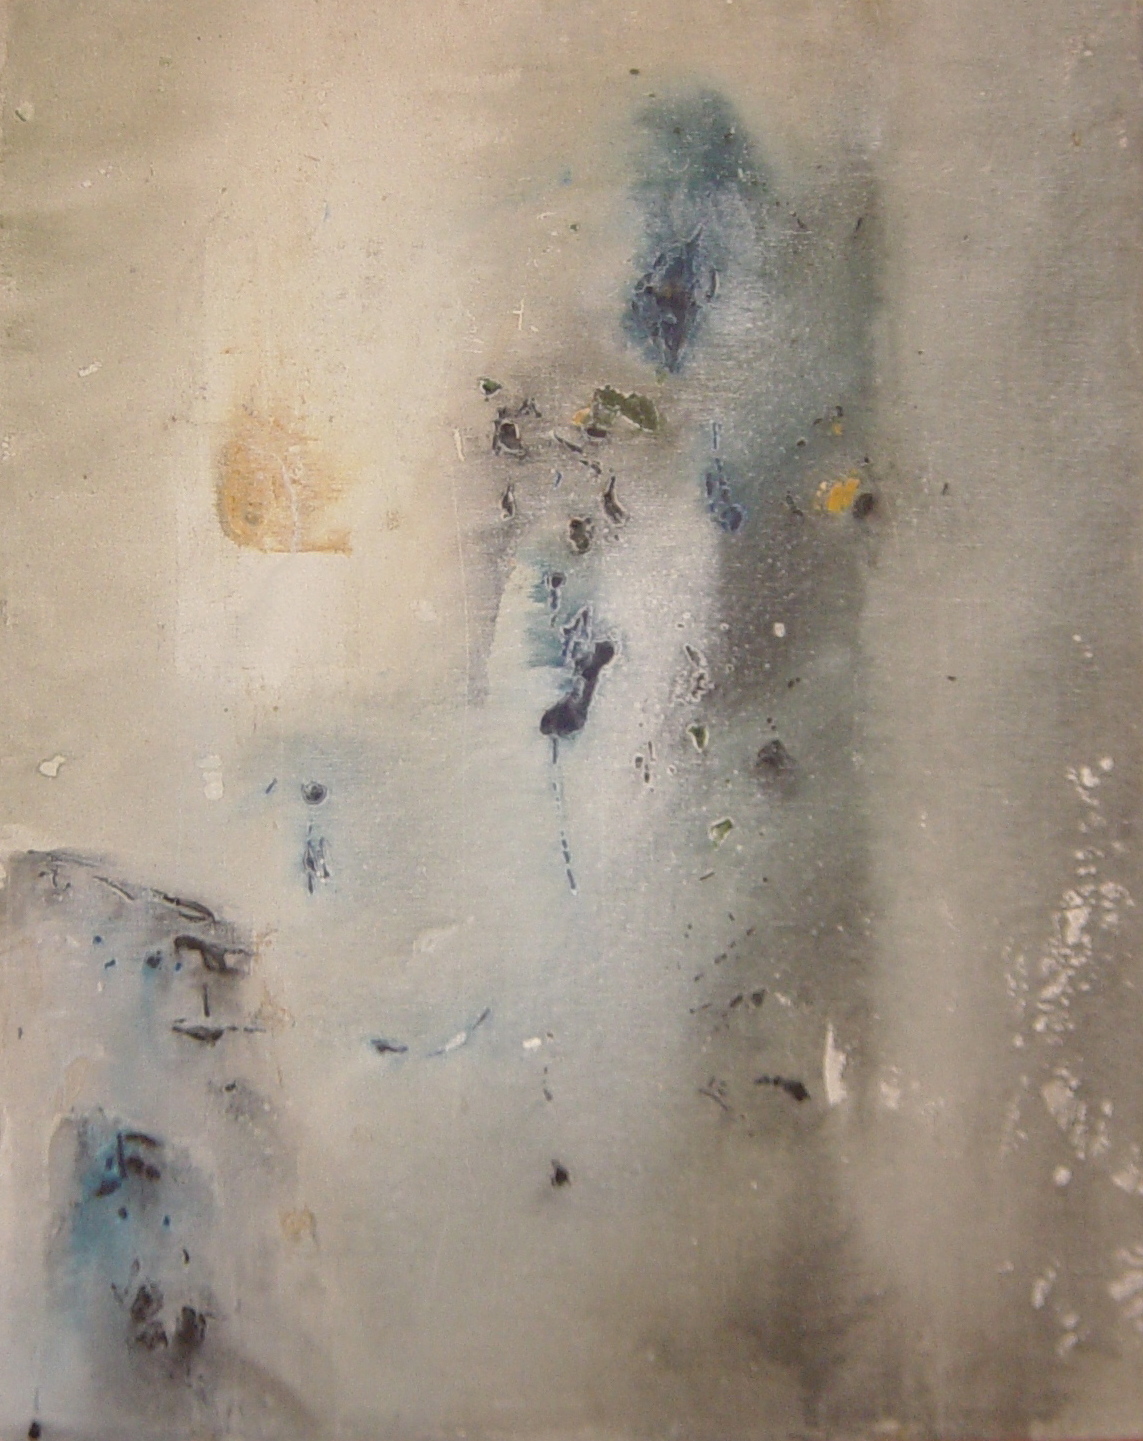 Senza titolo, 1958, tempera acrilica su tela, 100 x 80 cm